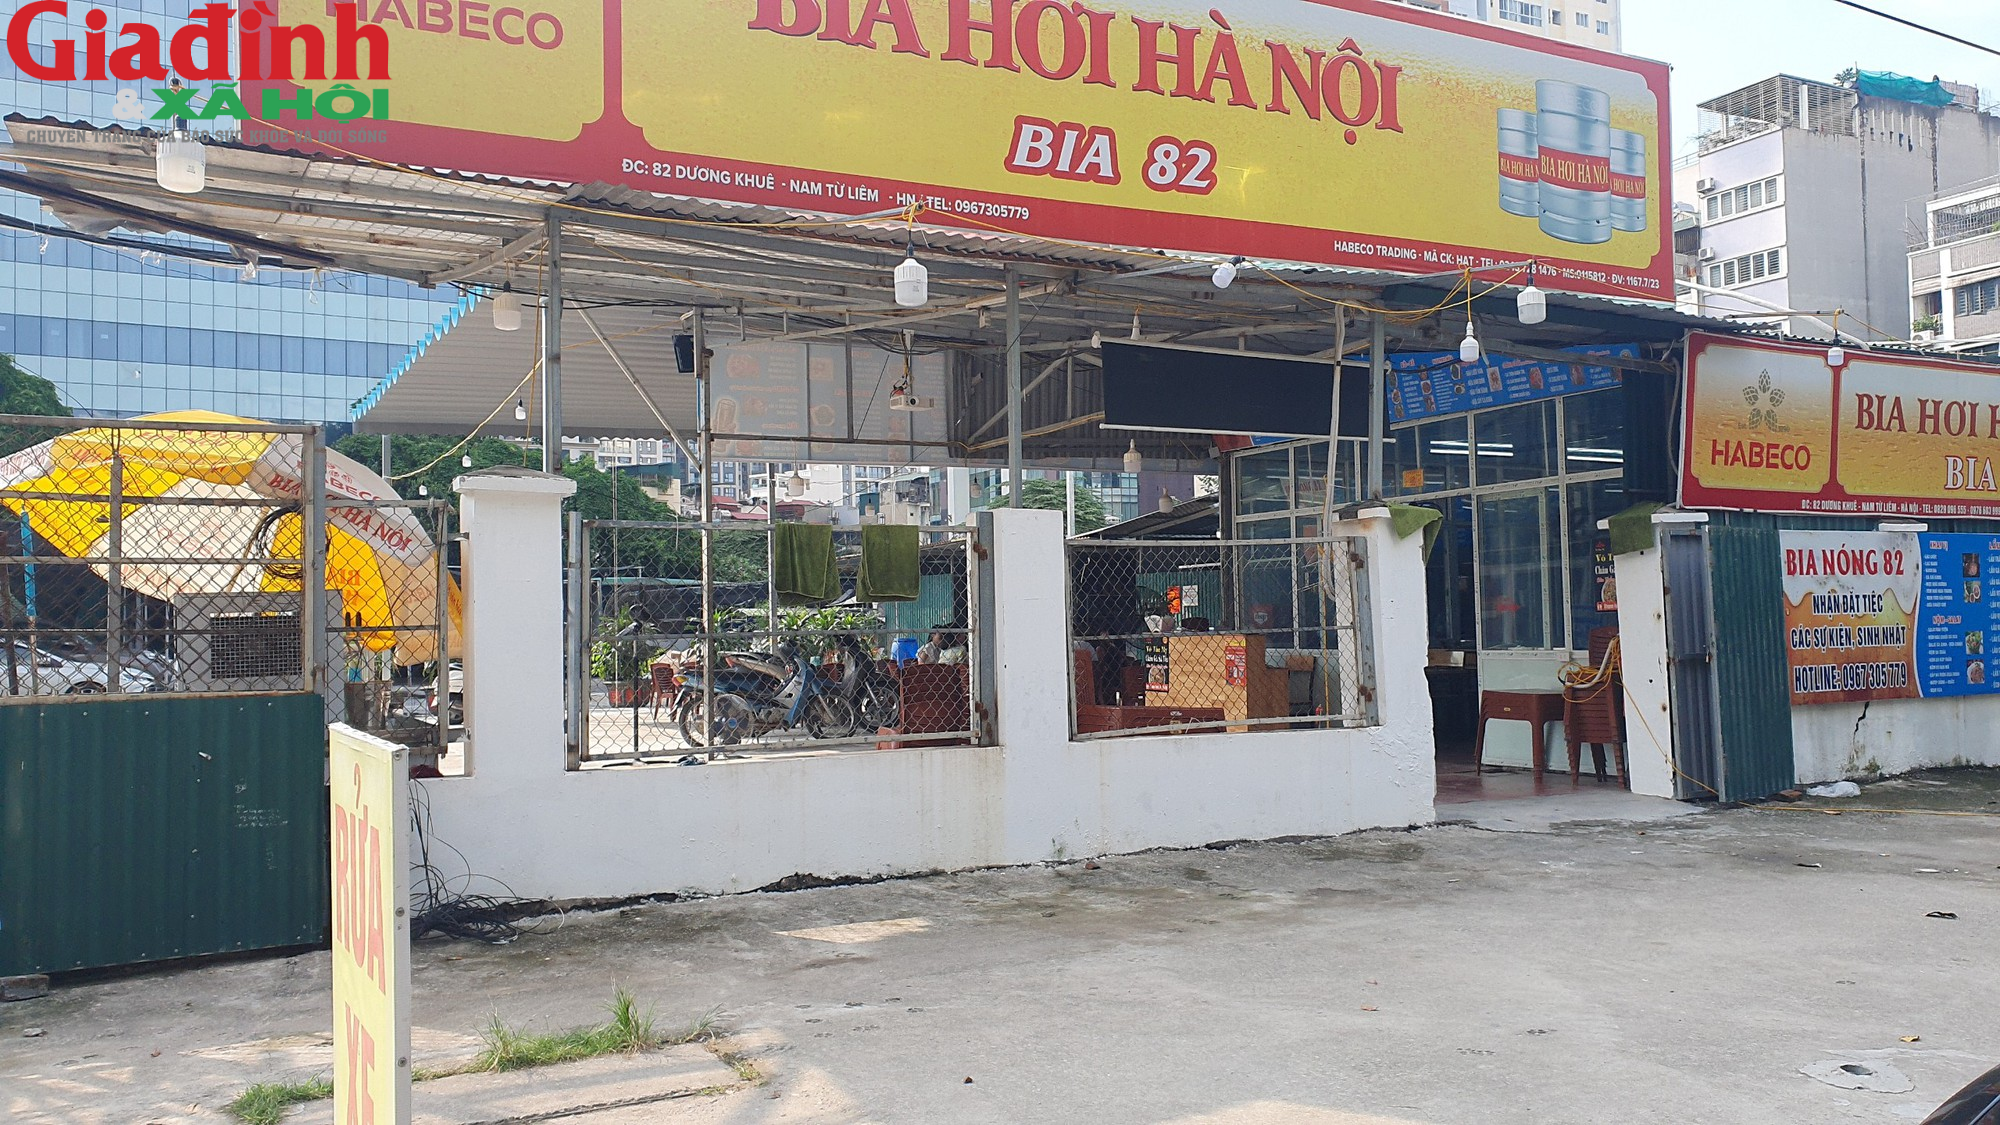 Hà Nội: Nhiều địa điểm kinh doanh ở phường Mỹ Đình 2 xây sơ xài, tiềm ẩn nguy cơ cháy nổ - Ảnh 7.